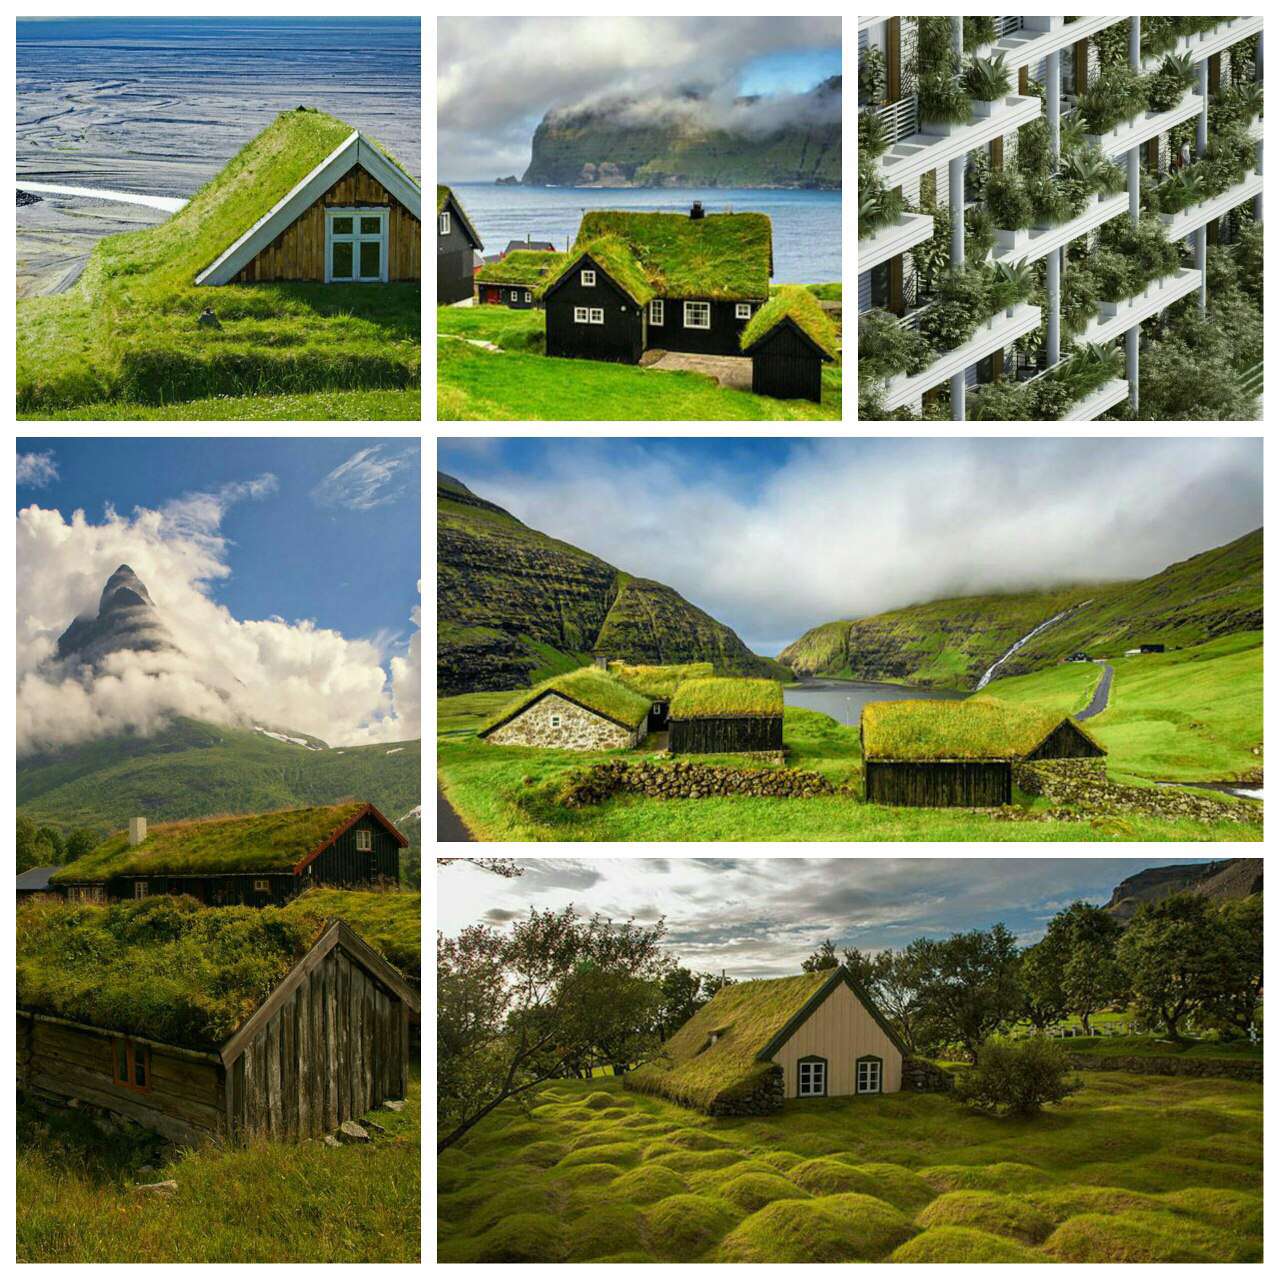 خانه های اروپایی با سقف پوشیده از گیاهان برای کاهش مصرف انرژی و حفظ دمای خانه ها